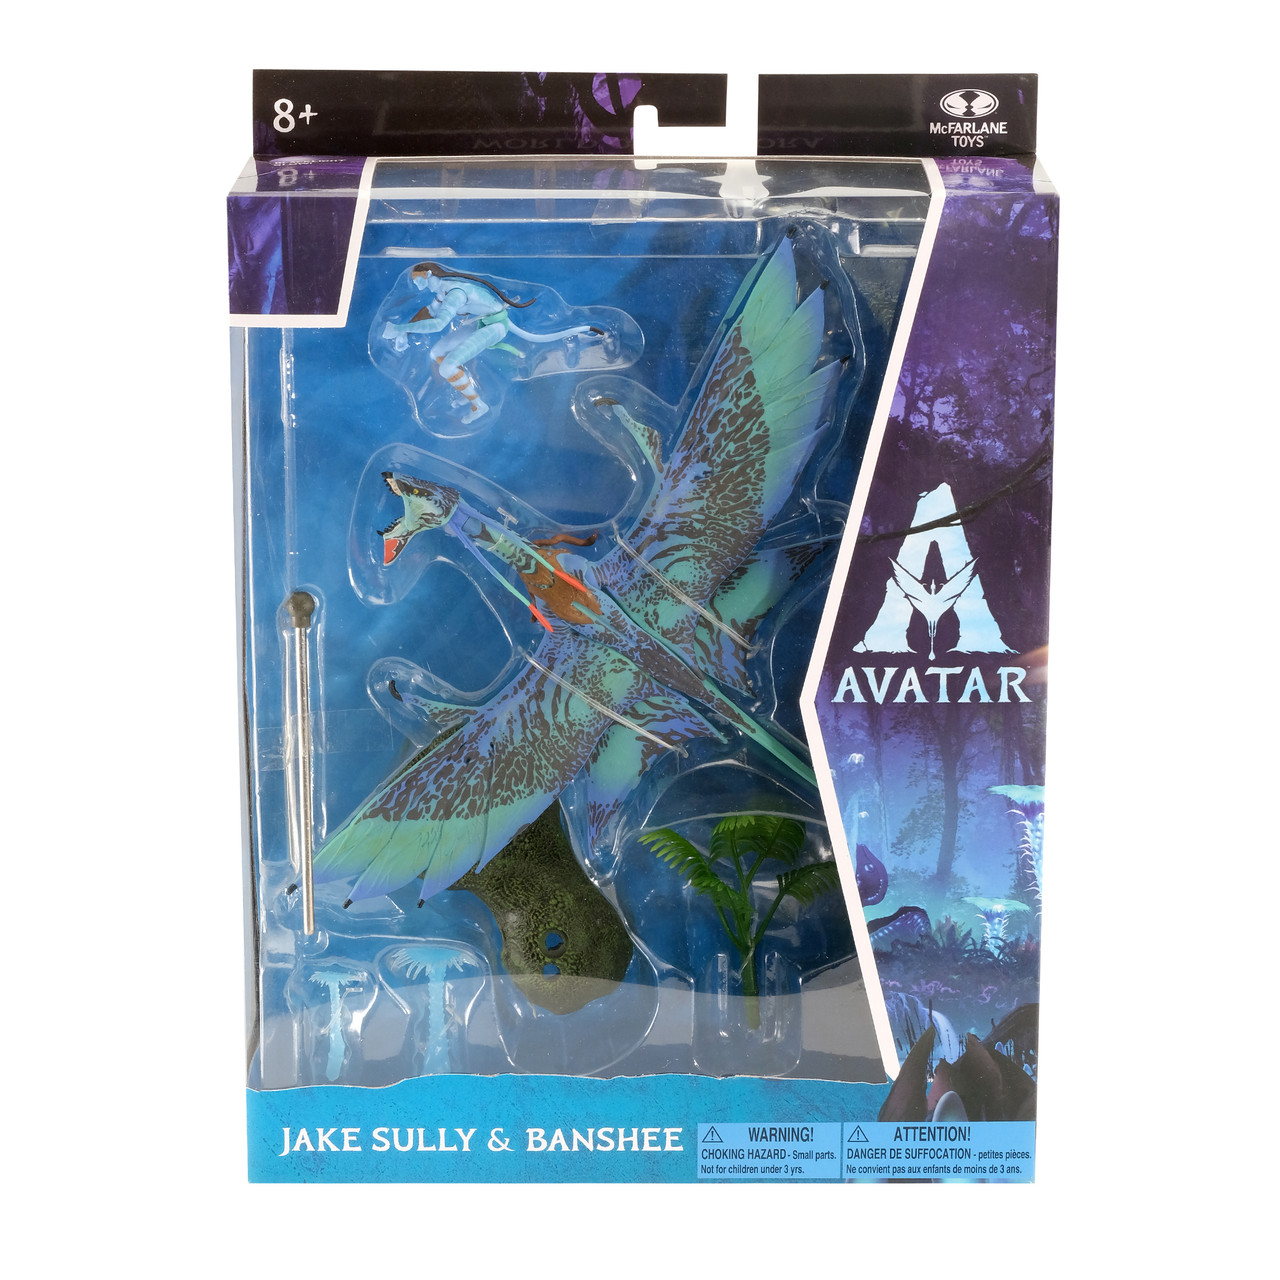 Jake Sully & Banshee (Avatar Movie) World of Pandora Figures